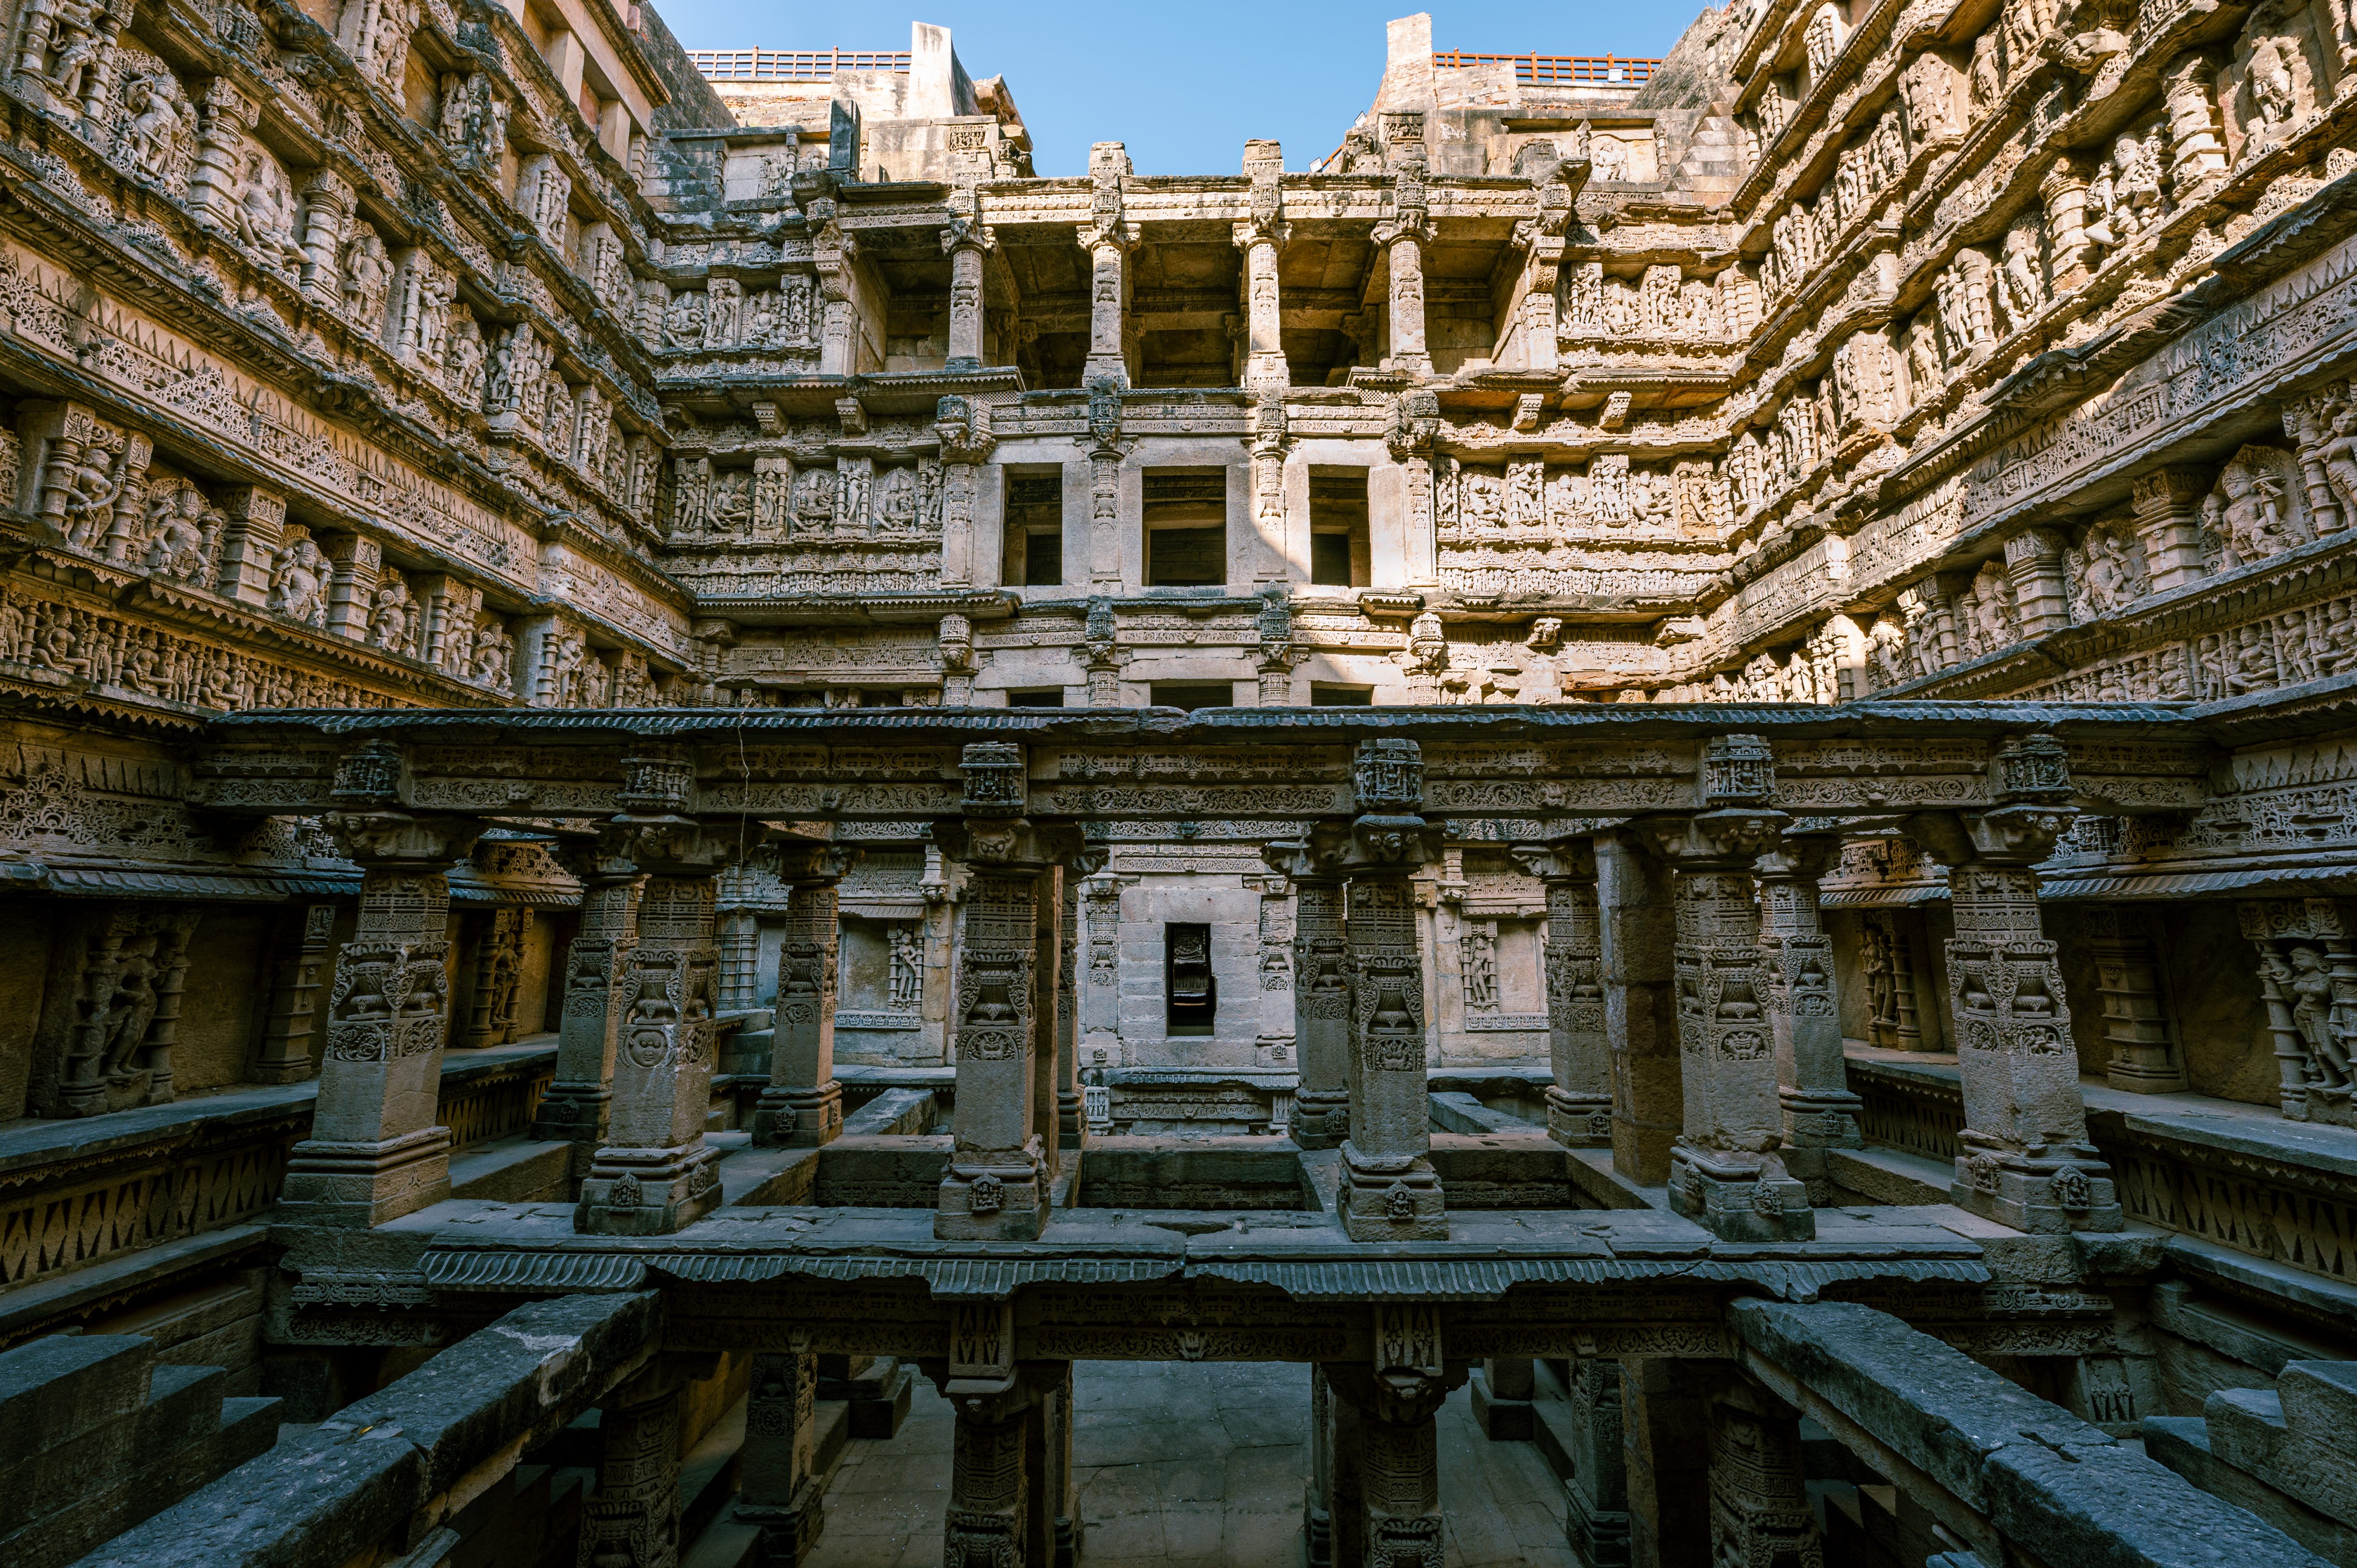 UNESCO Heritage Site Rani ki vav stepwell in Gujarat